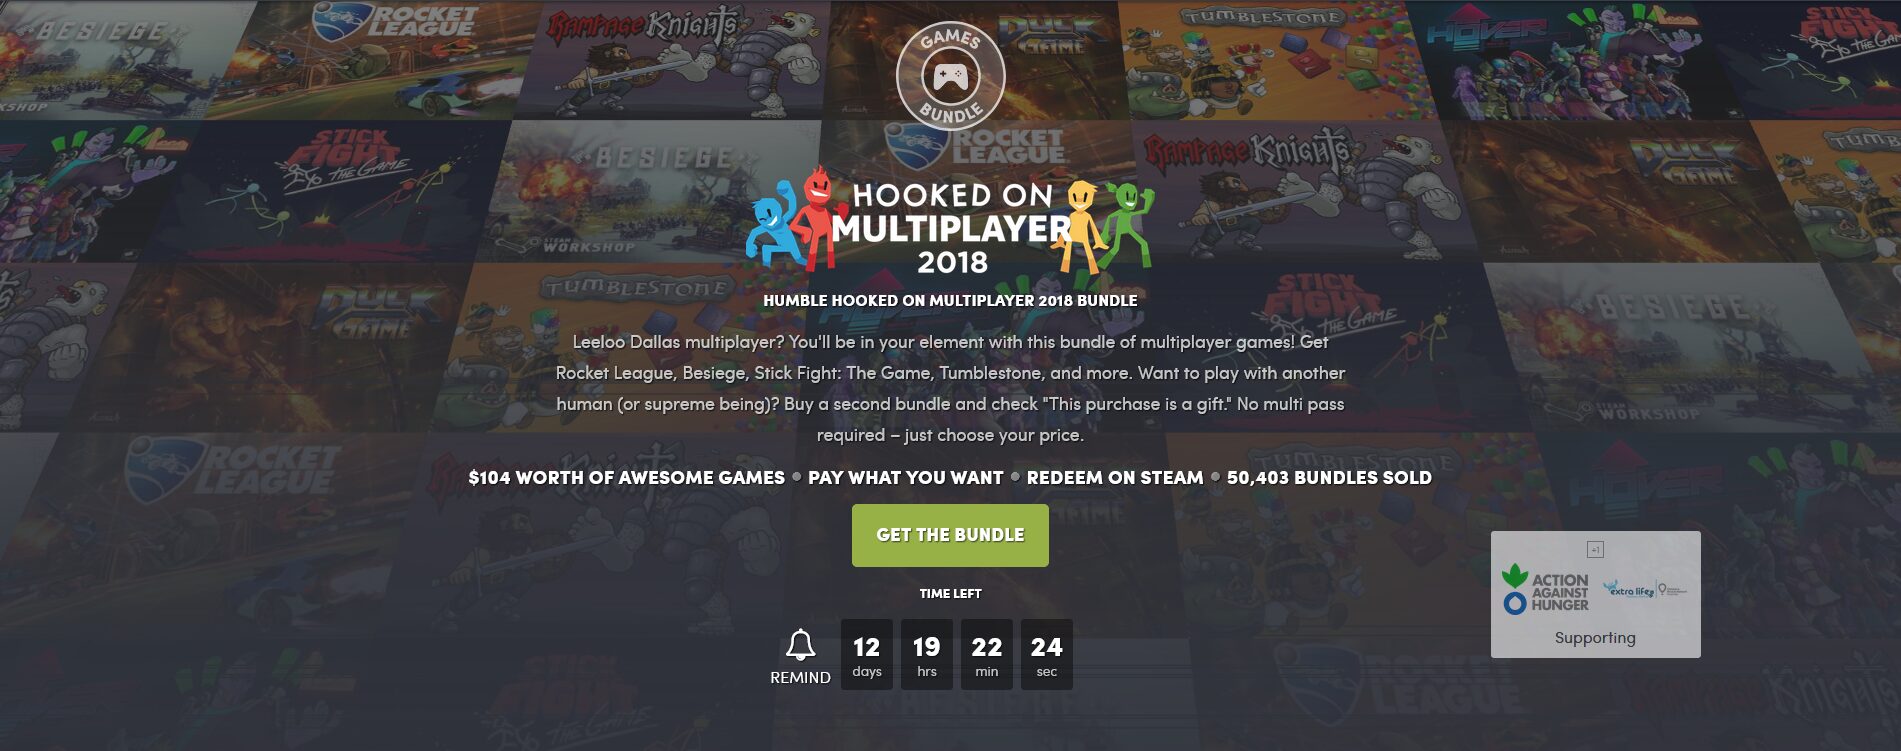 Humble Bundle’s Hooked on Multiplayer Bundle